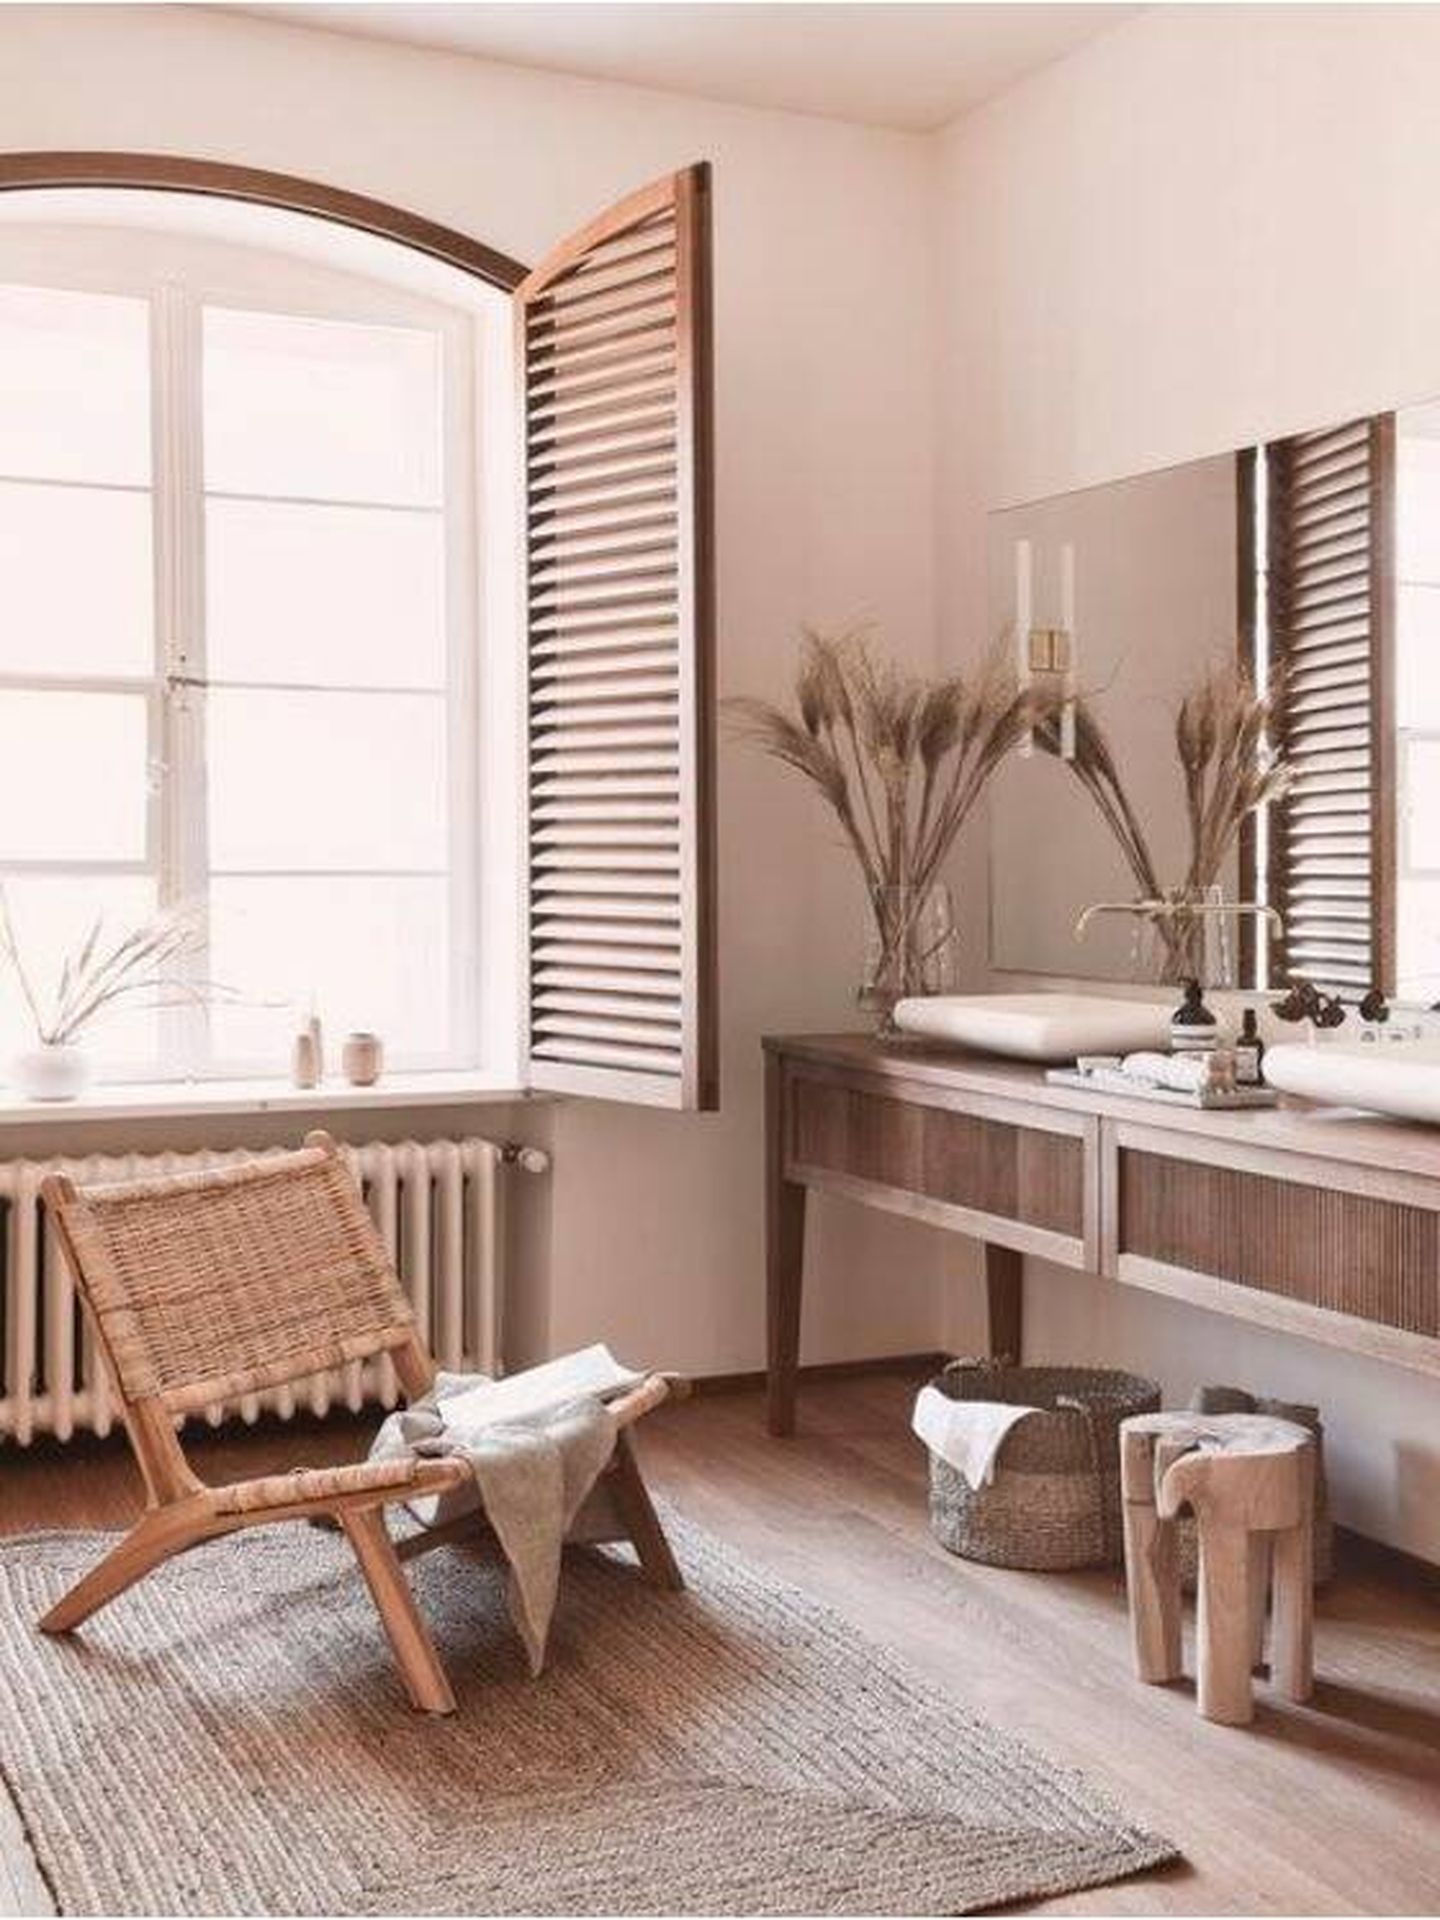 Un baño con muebles de madera y plantas de Westwing. (Cortesía)